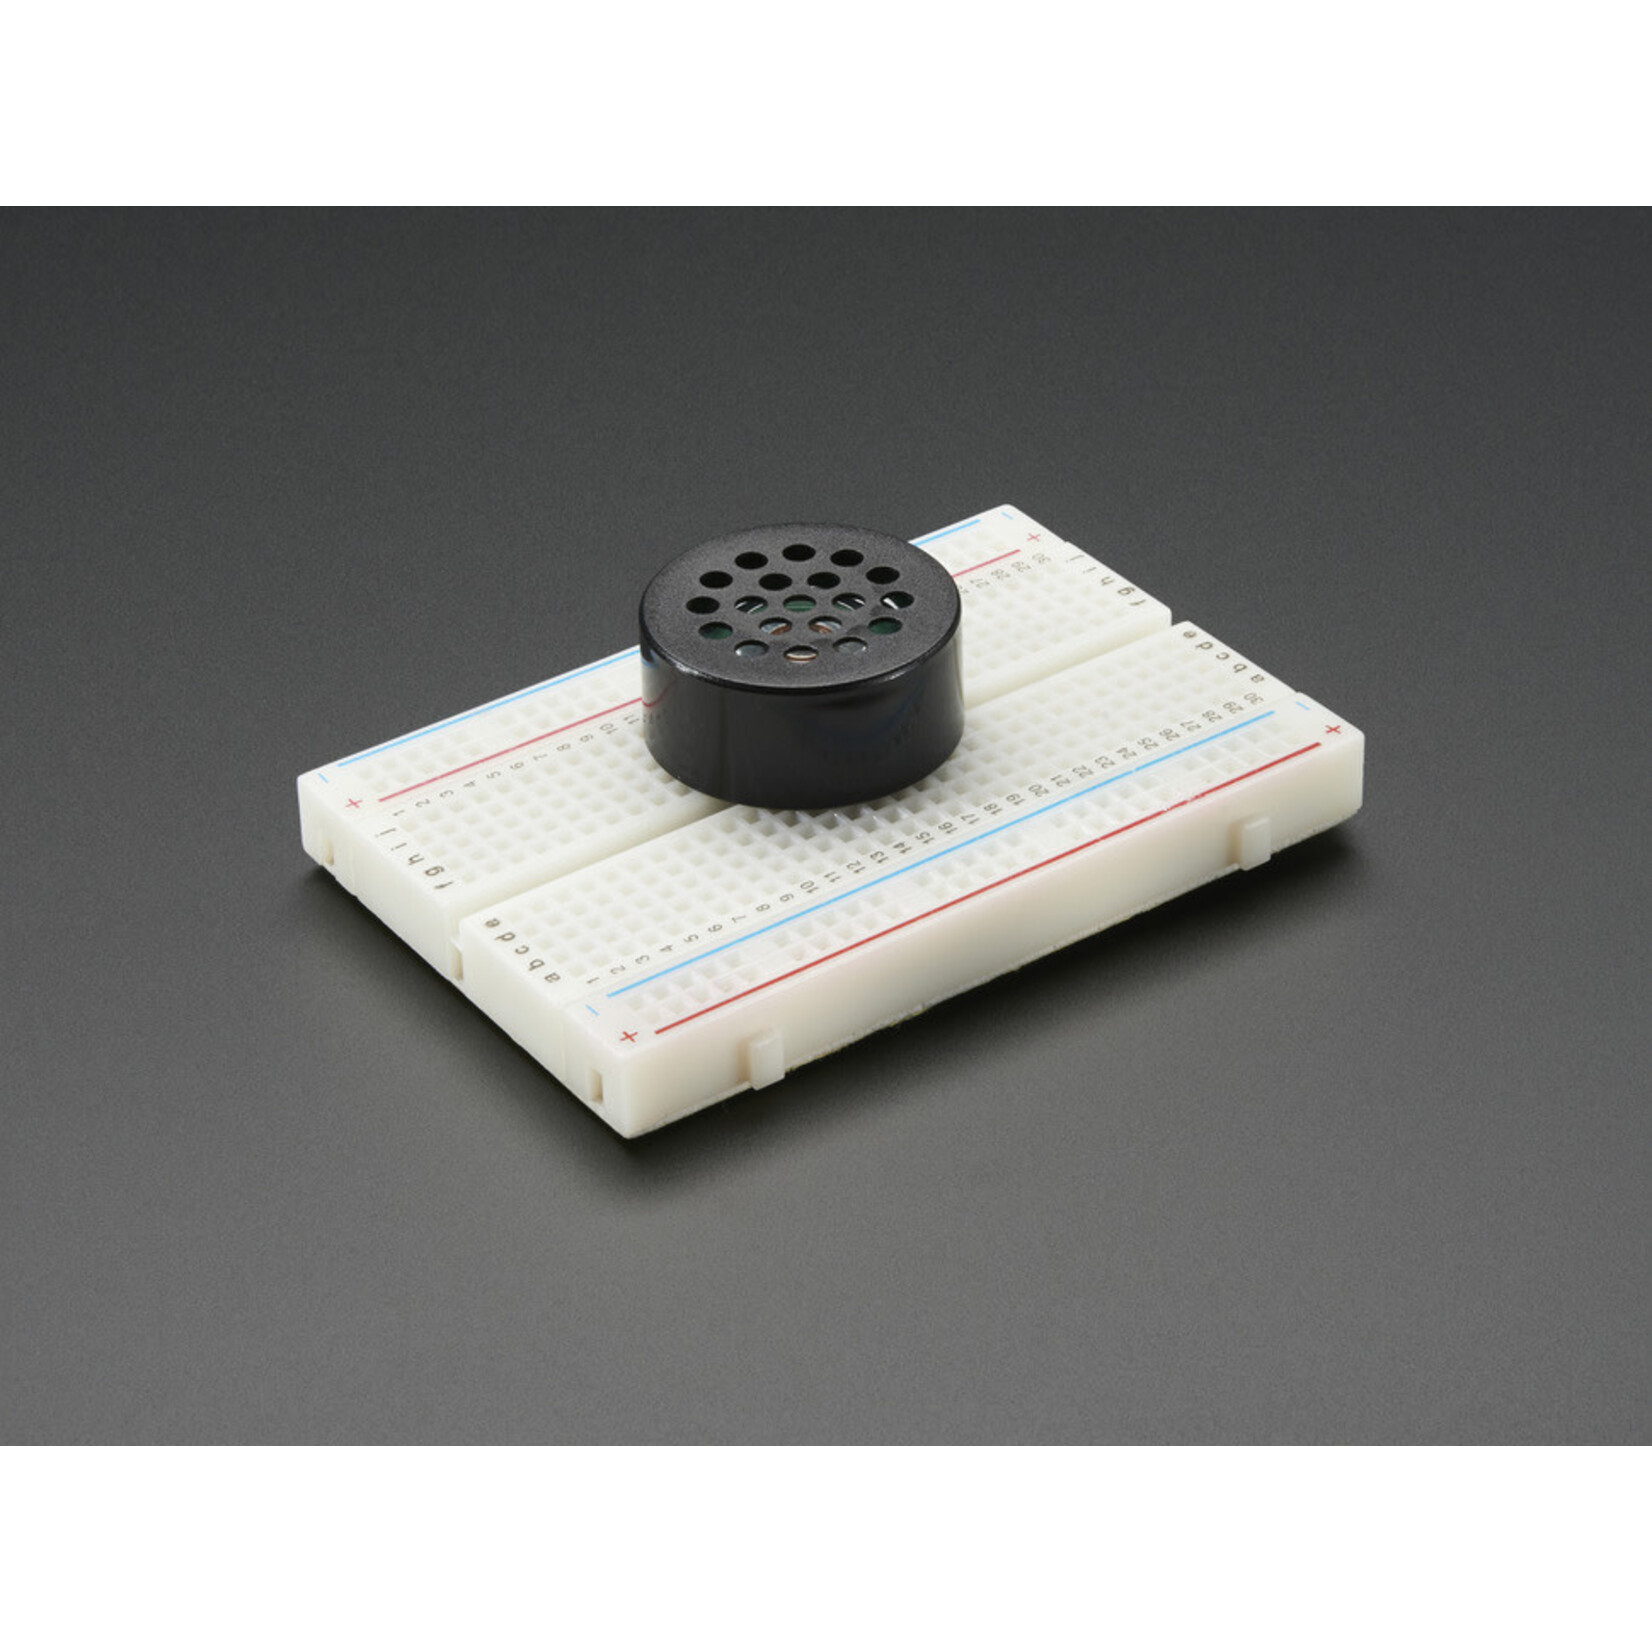 Adafruit Breadboard-Friendly Pcb Mount Mini Speaker - 8 Ohm 0.2W